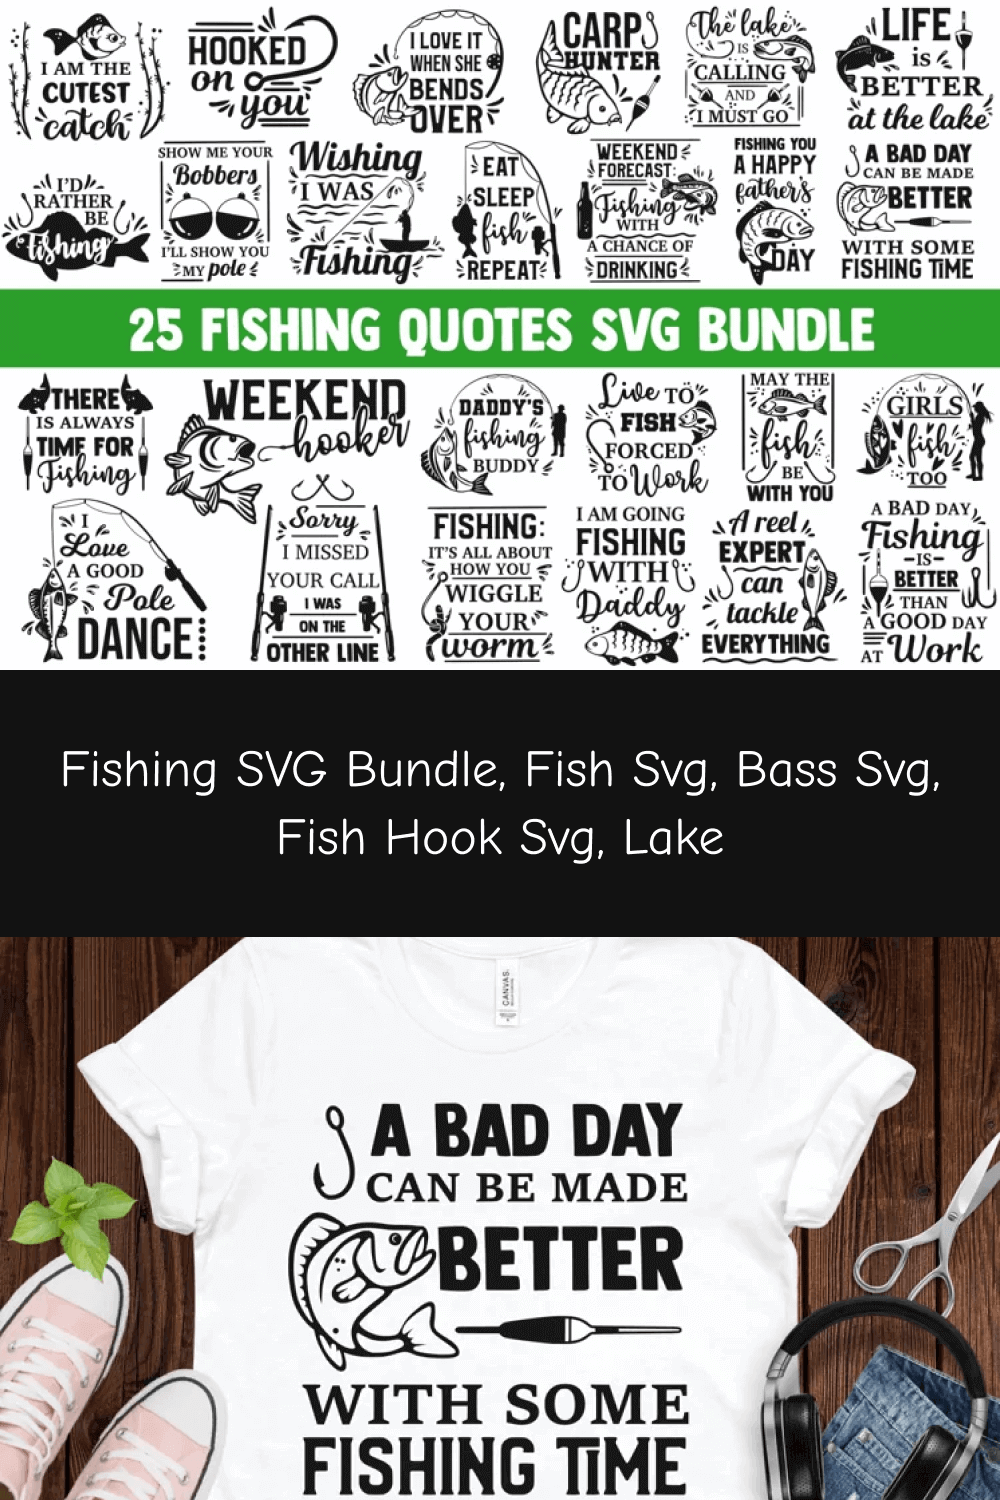 Fish Hook SVG.